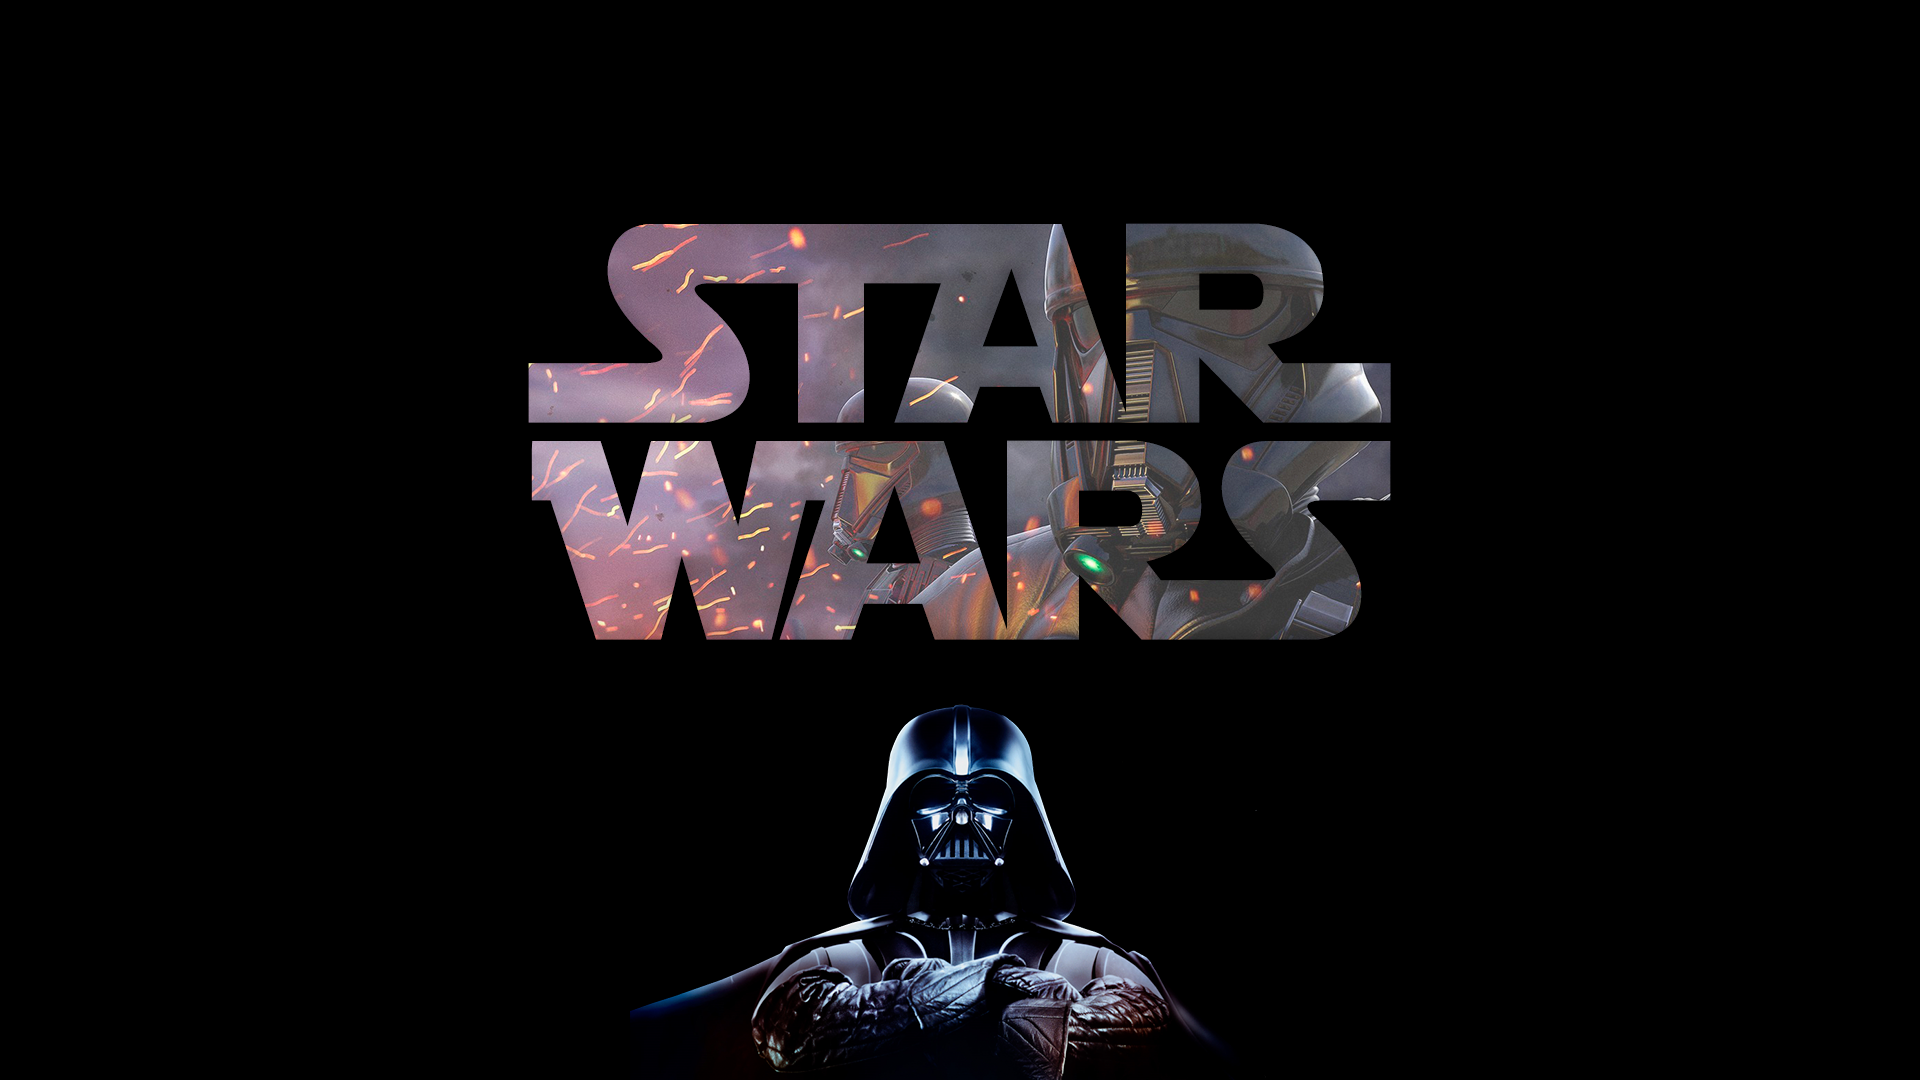 Логотип фильма Звездные войны с Дартом Вейдером 